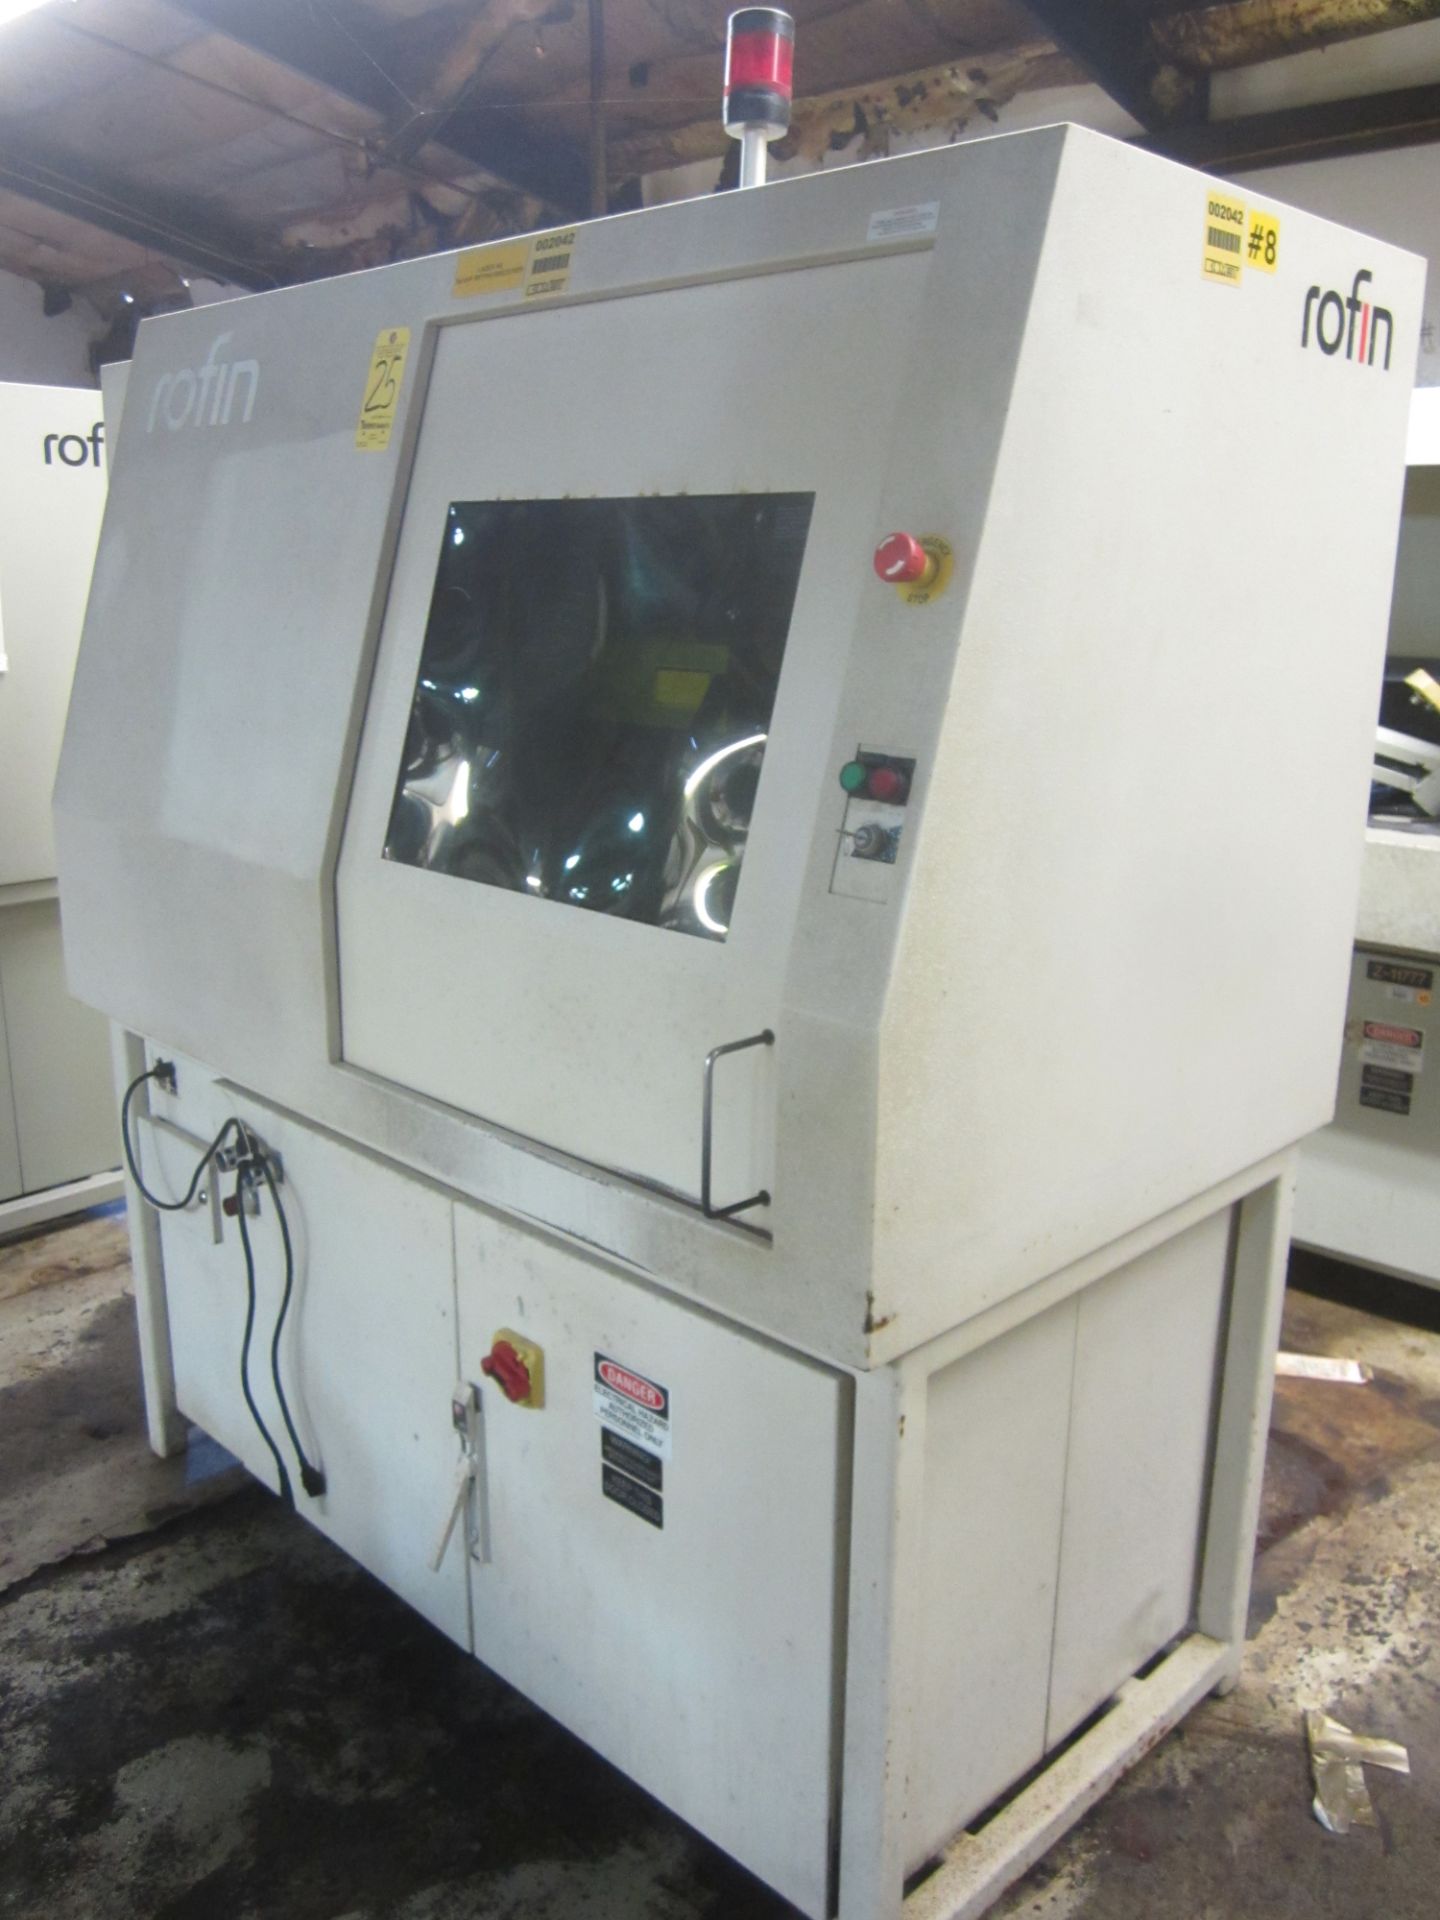 Rofin Model LME-1 Laser Parts Marker, 100 Watt, s/n SMD-060-110922-22009, New 2003 - Image 5 of 9